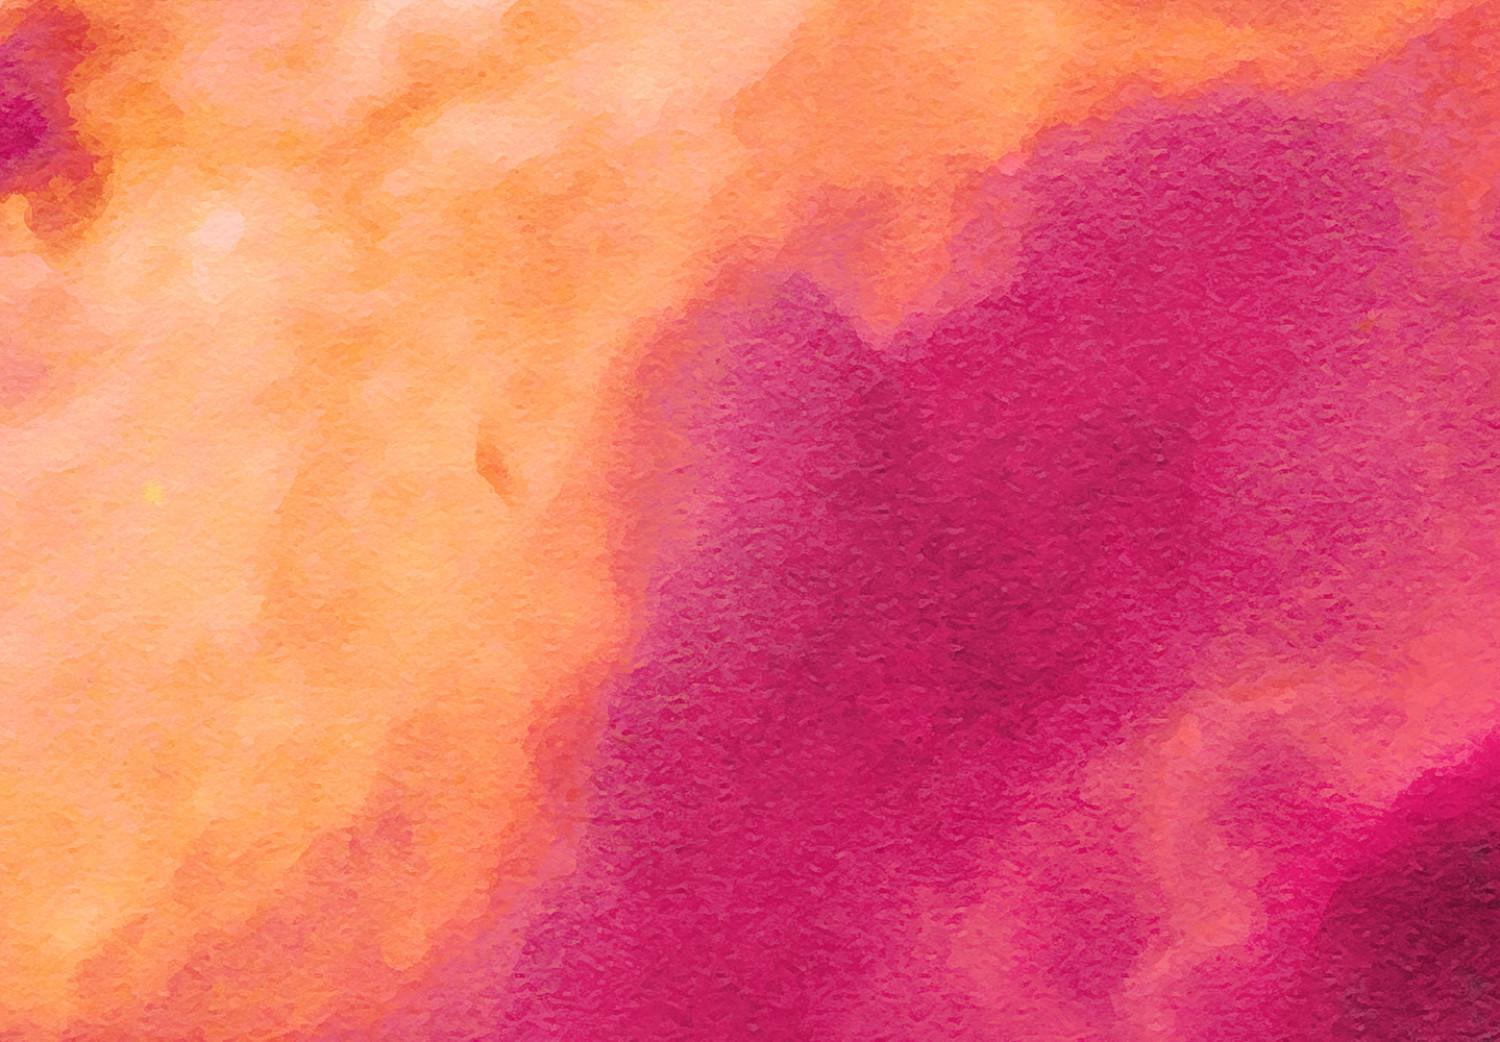 Póster Pink Nebula [Poster]